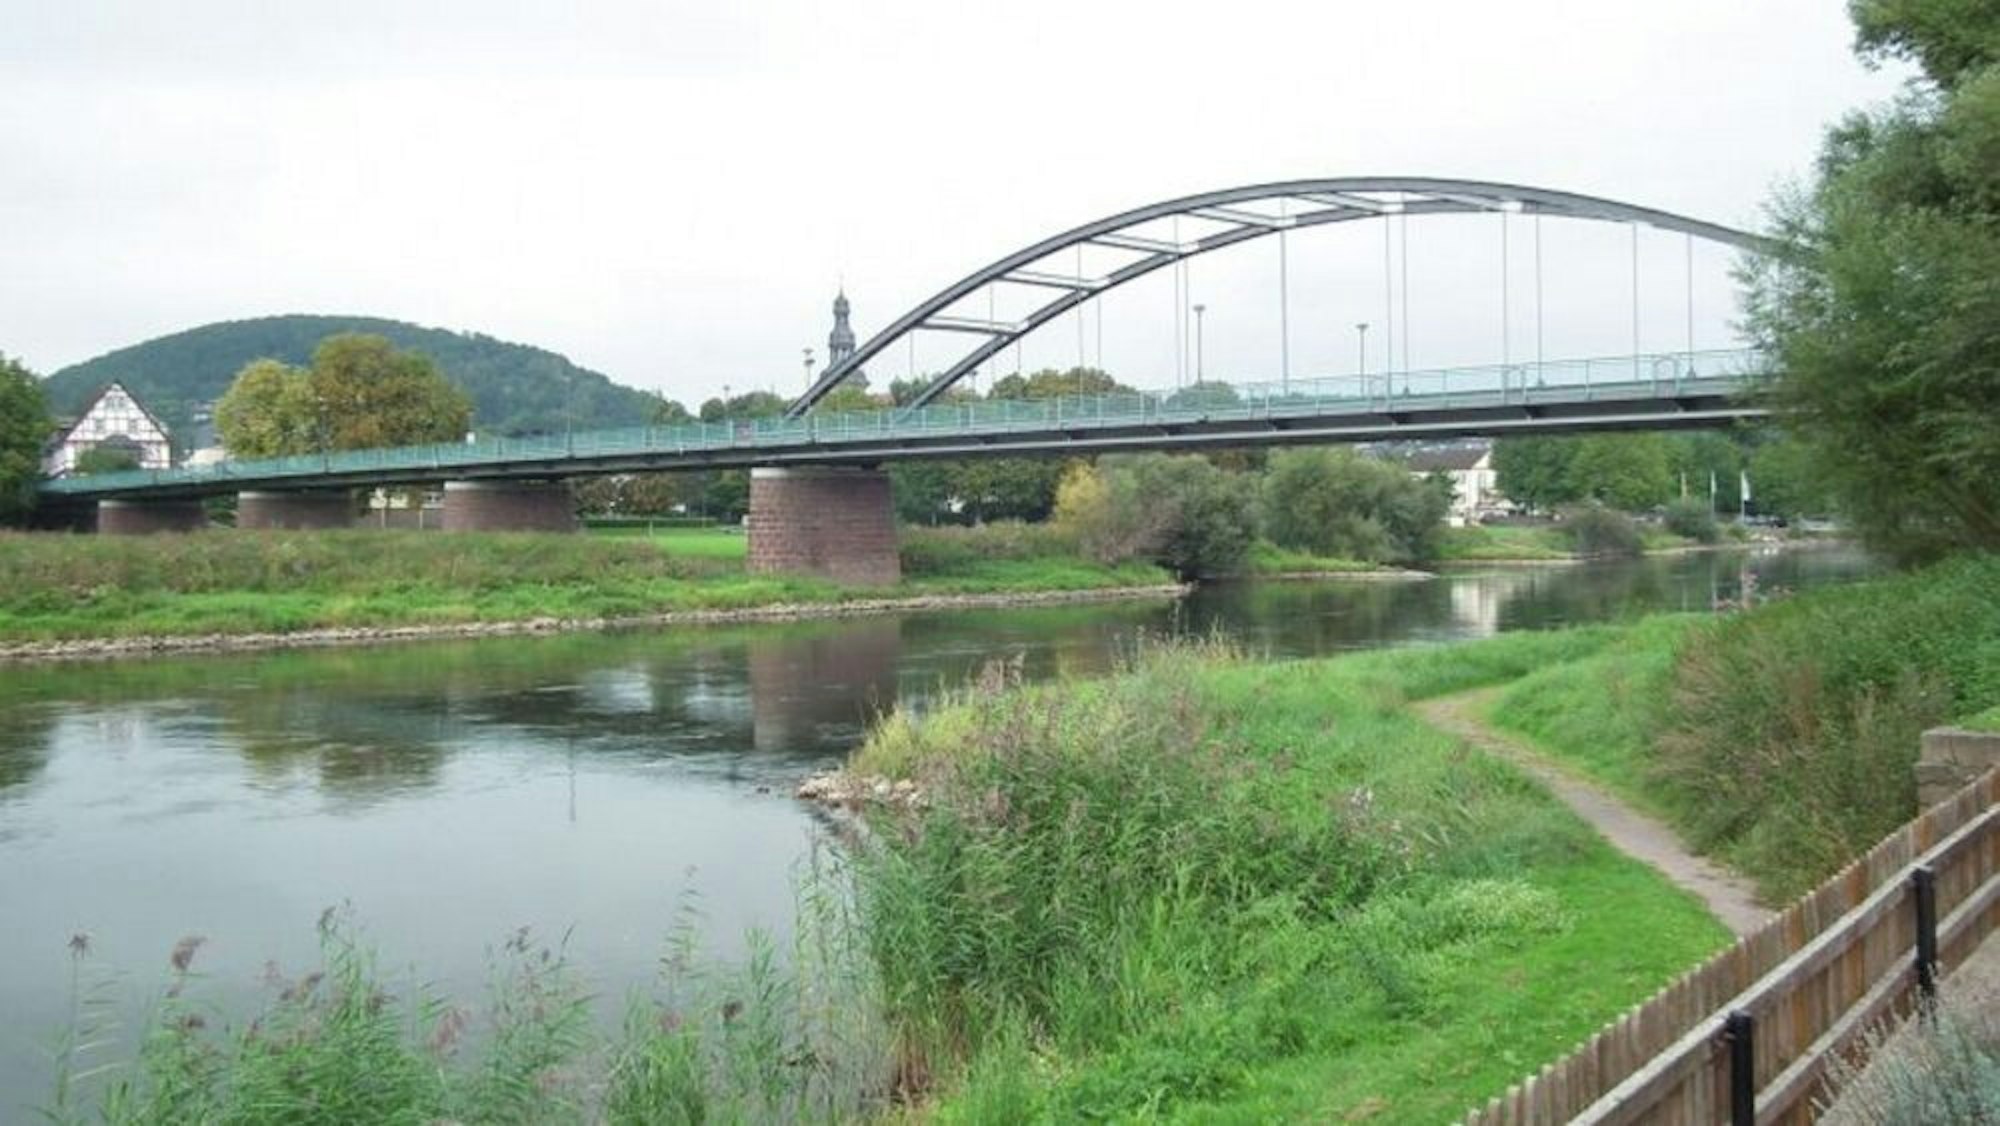 Bauweise einer Stabbogenbrücke, die an der Wupper allerdings wesentlich kleiner ausfallen wird als diese über die Weser an der B 241 in Beverungen.